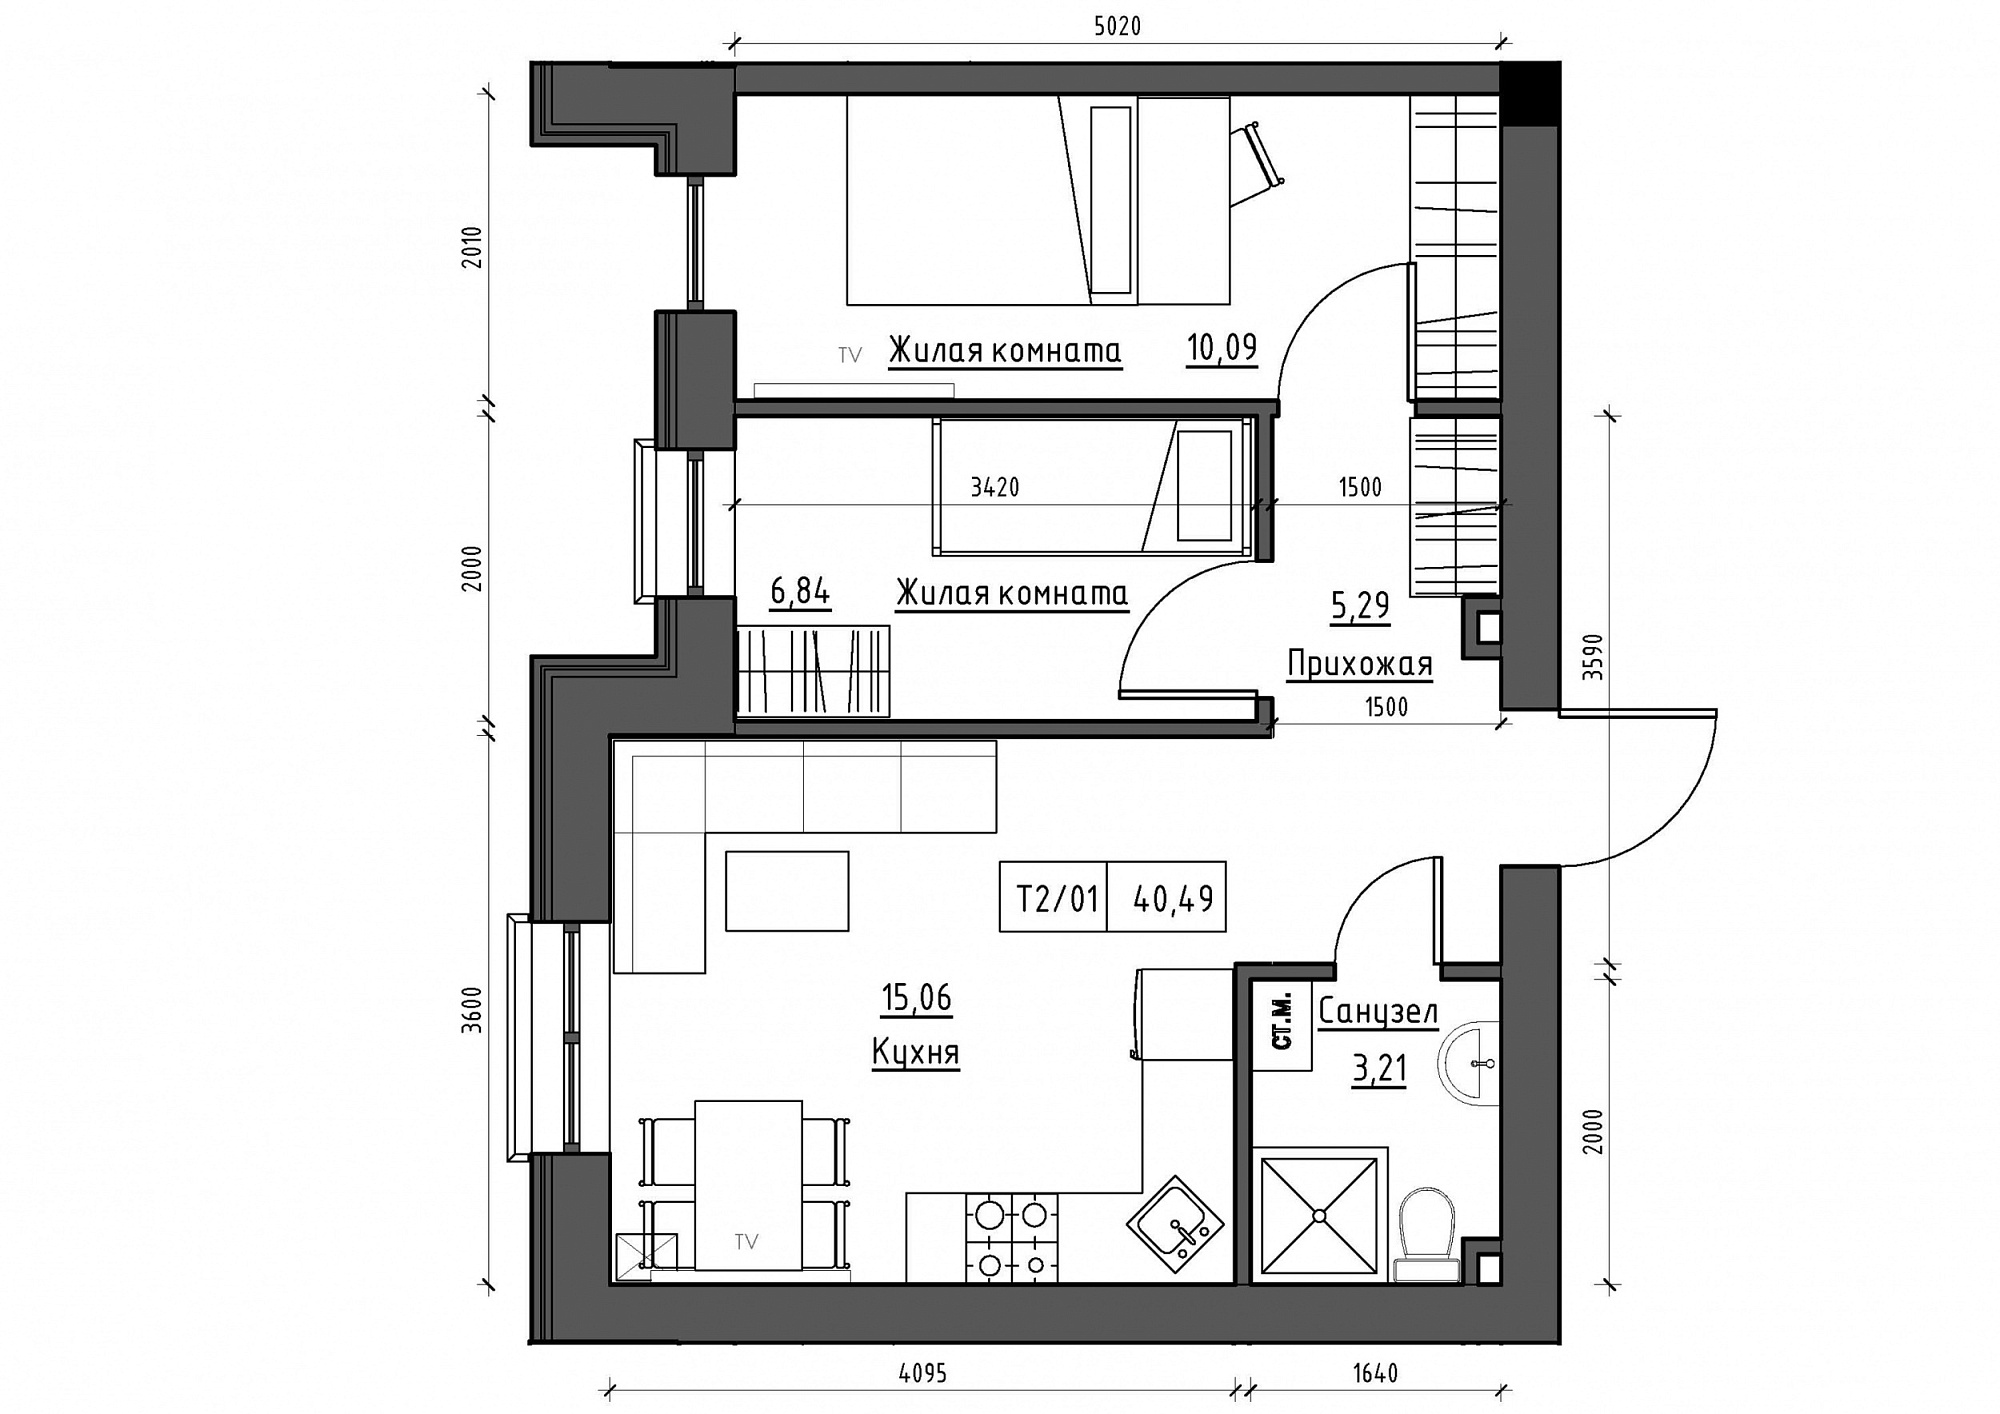 Планування 2-к квартира площею 40.49м2, KS-012-01/0010.